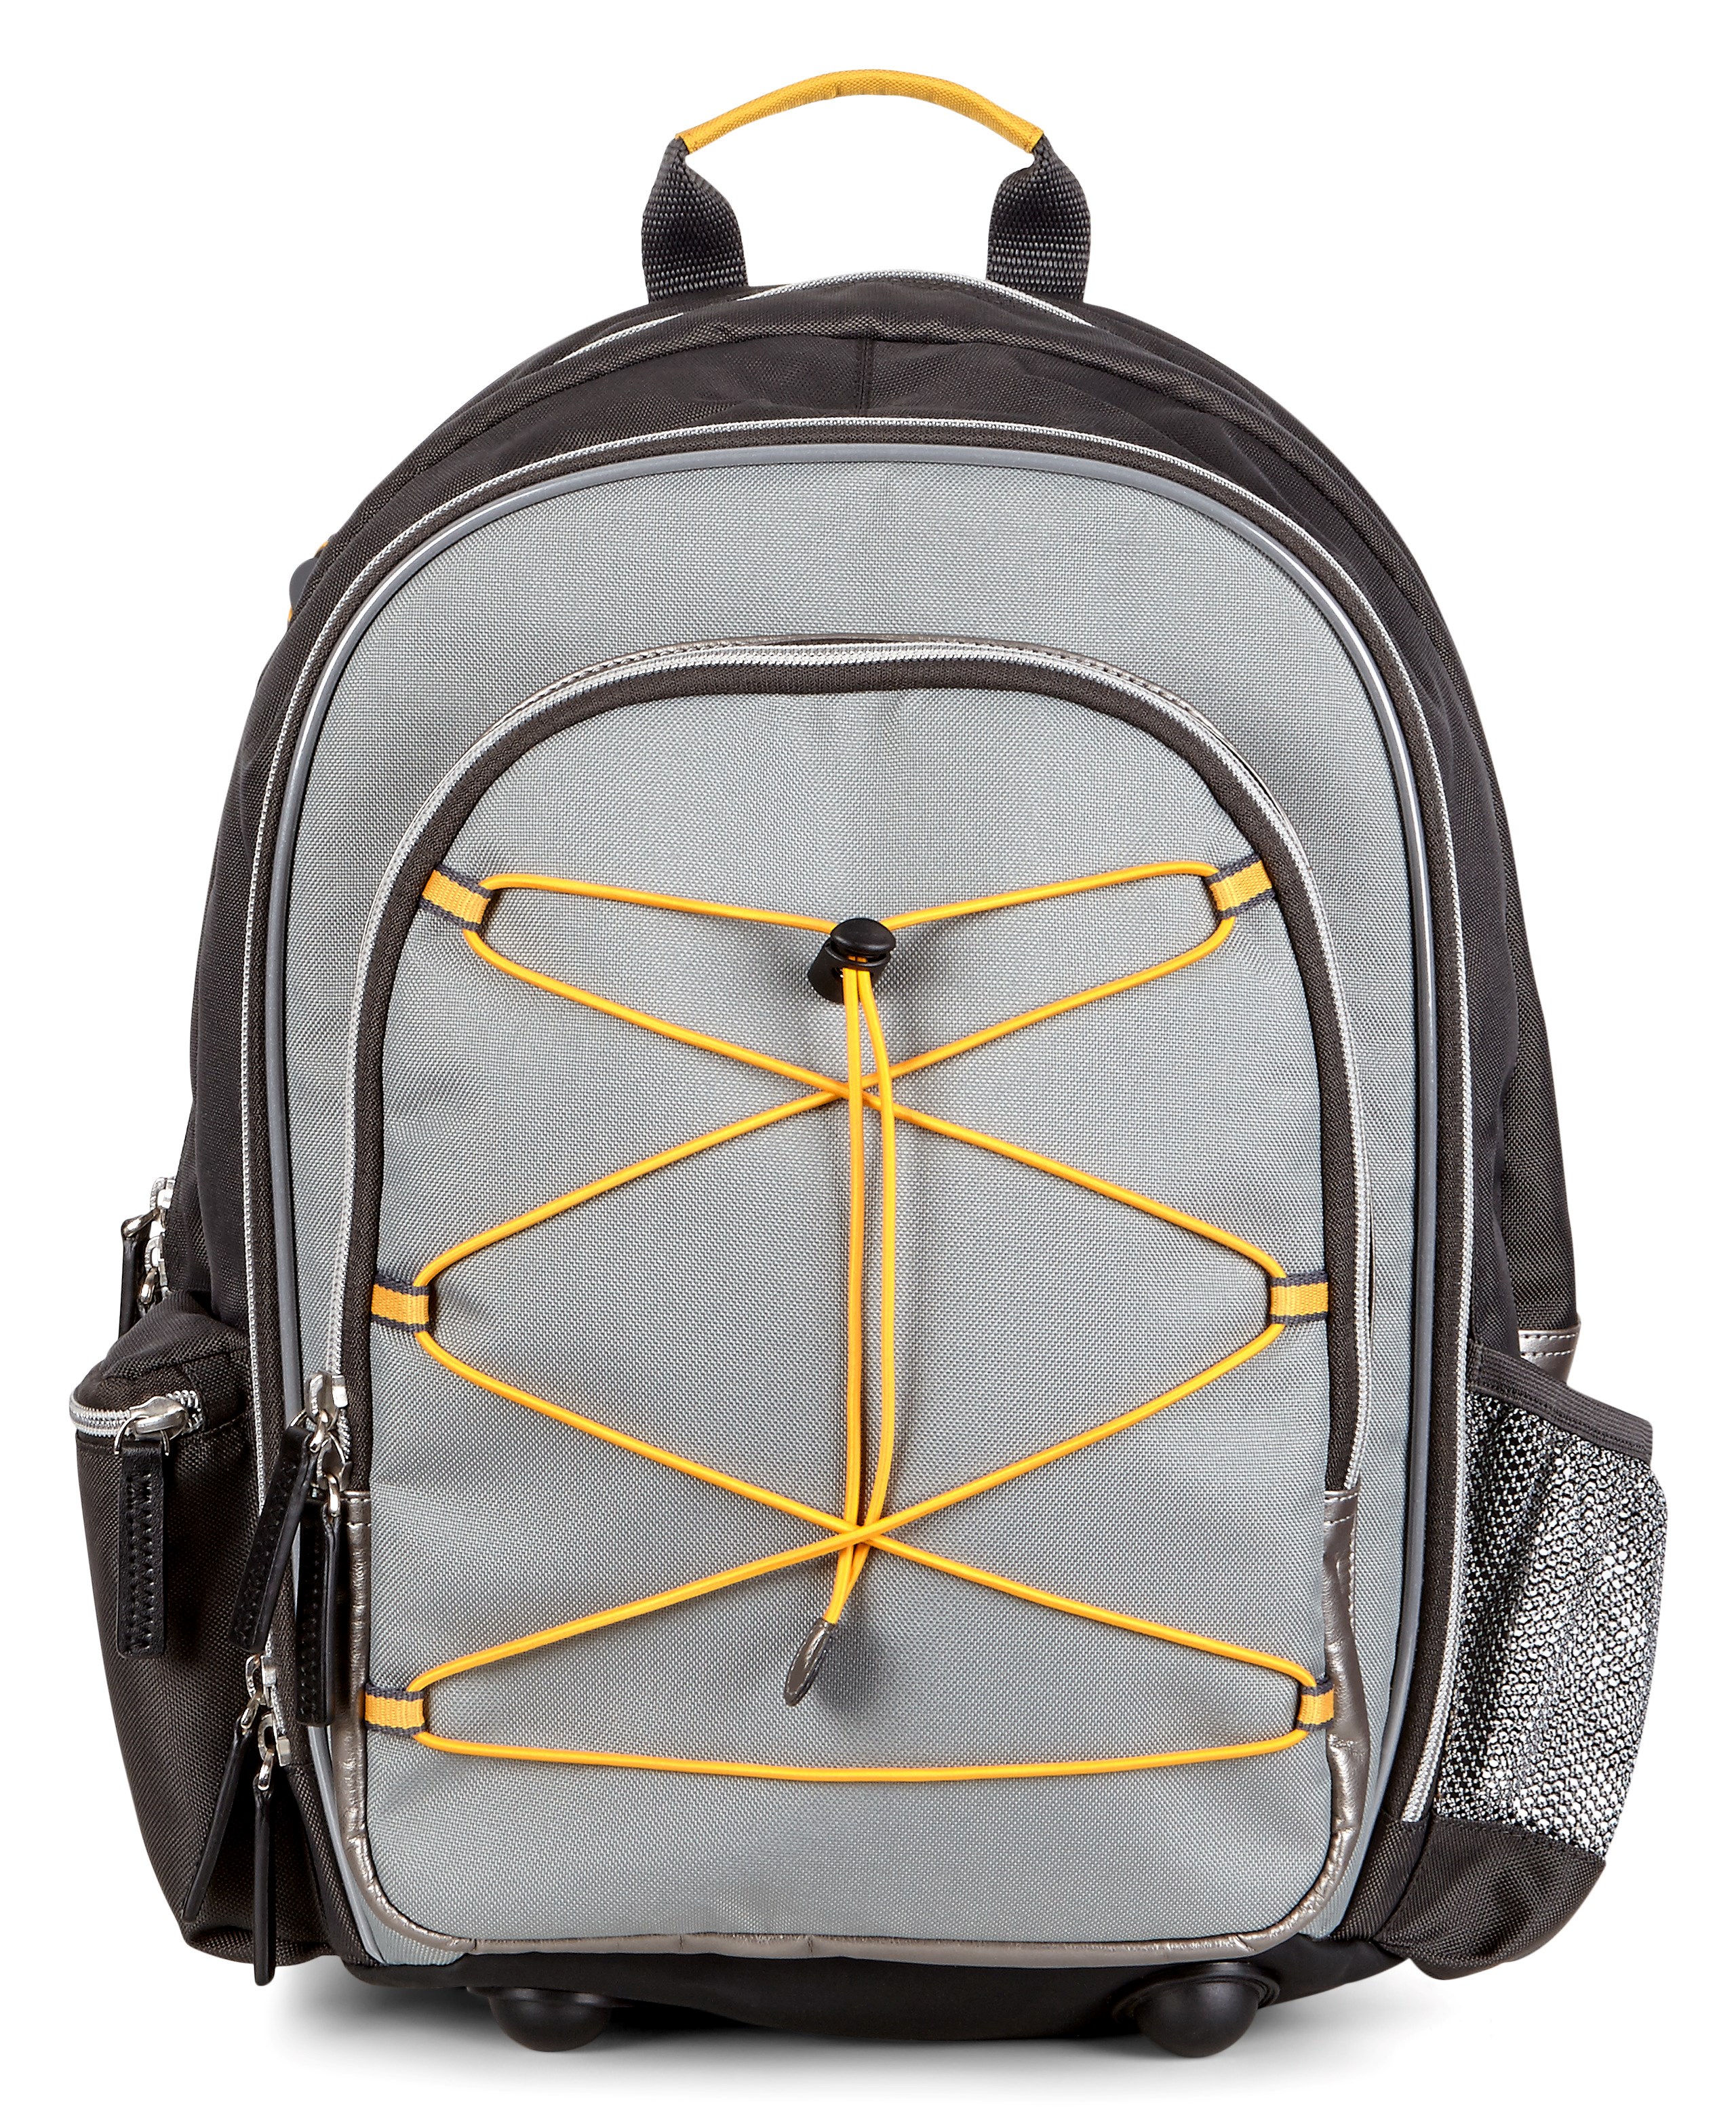 ecco school backpack